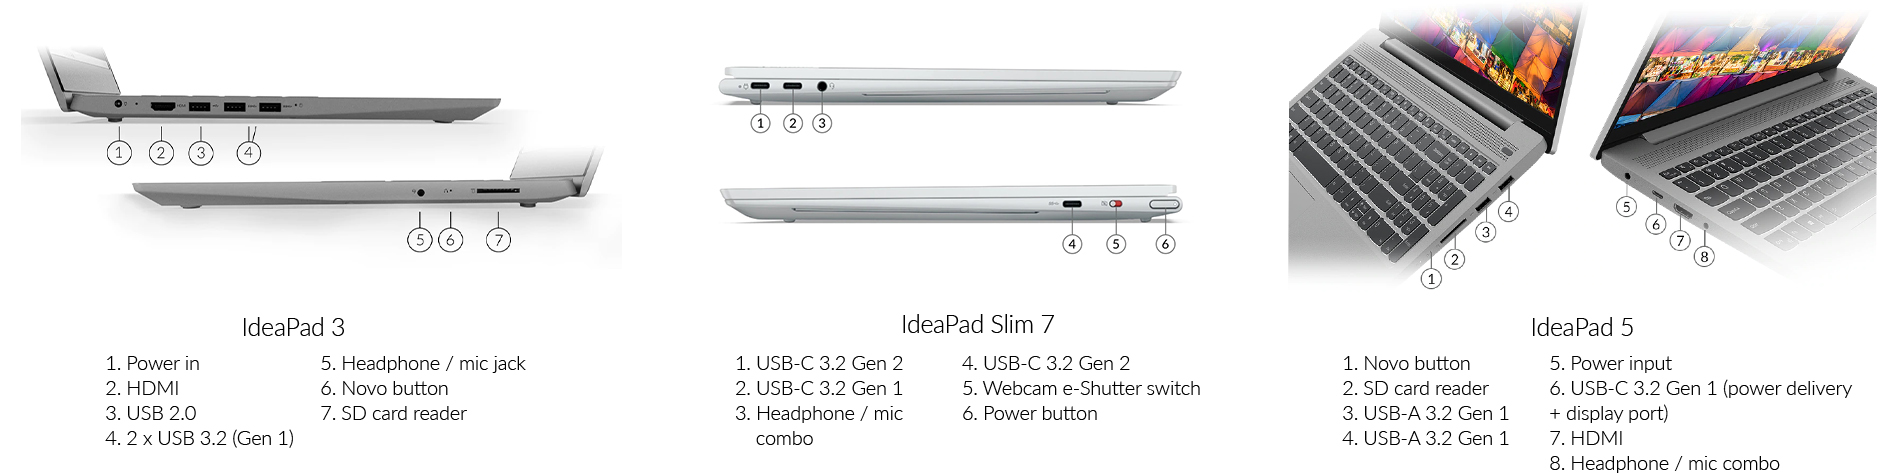 Lenovo Ideapad 05.04.ports